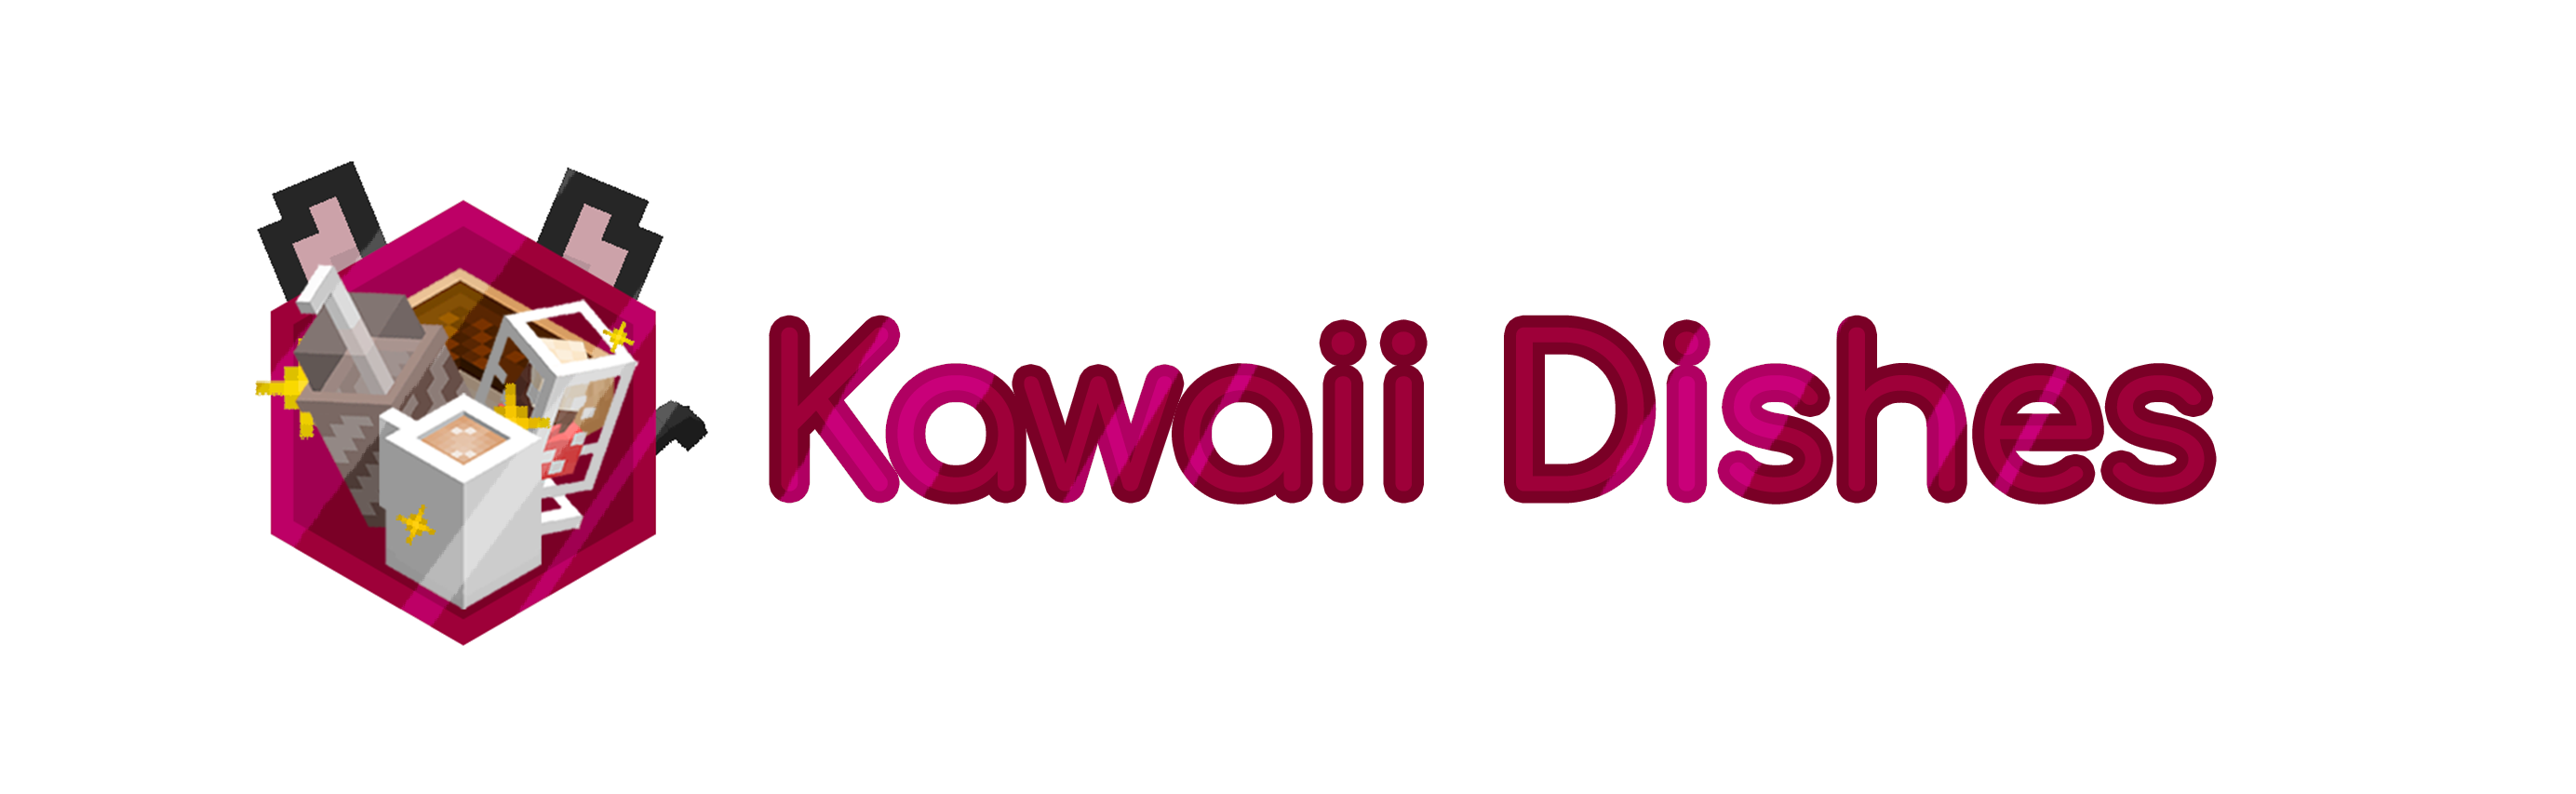 Kawaii Dishes: мир мэйдо-кафе с новой едой и косметической броней